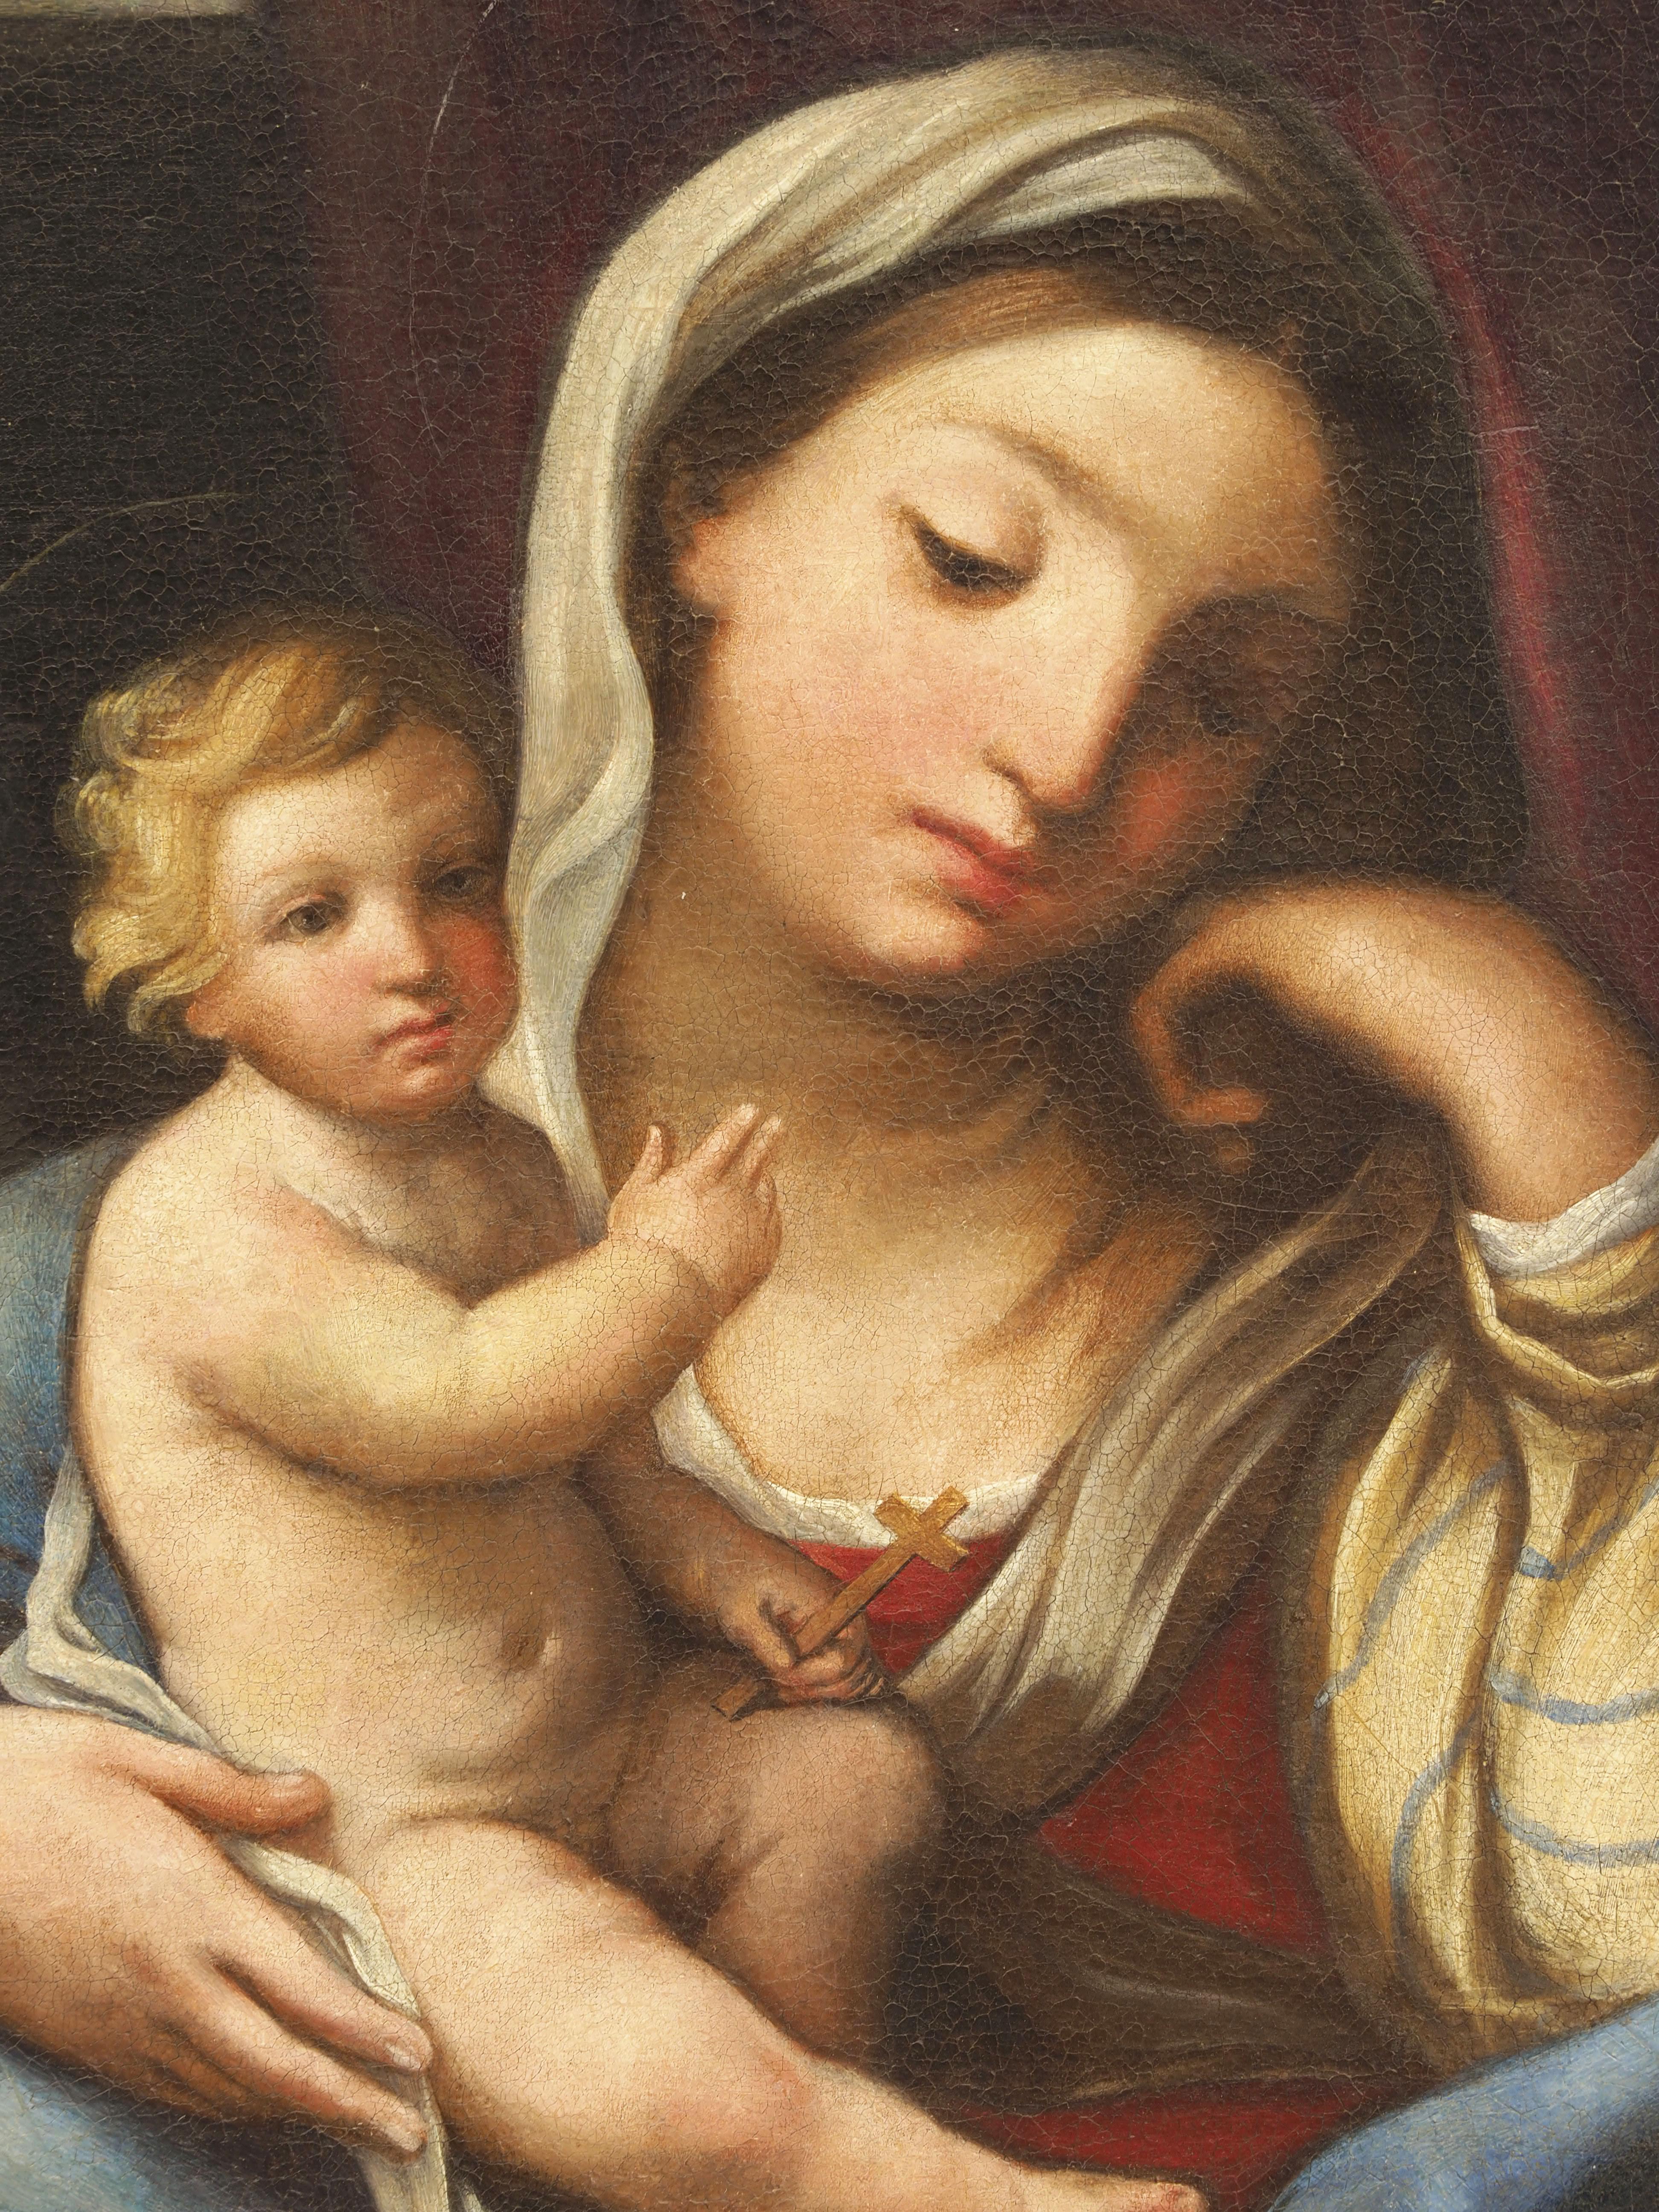 Römische Schule der italienischen Malerei Madonna mit Kind frühes XVIII Jahrhundert
Dieses außergewöhnlich gut erhaltene Kunstwerk wurde von einem Künstler der römischen Schule der italienischen Malerei im frühen XVIII. Jahrhundert geschaffen und